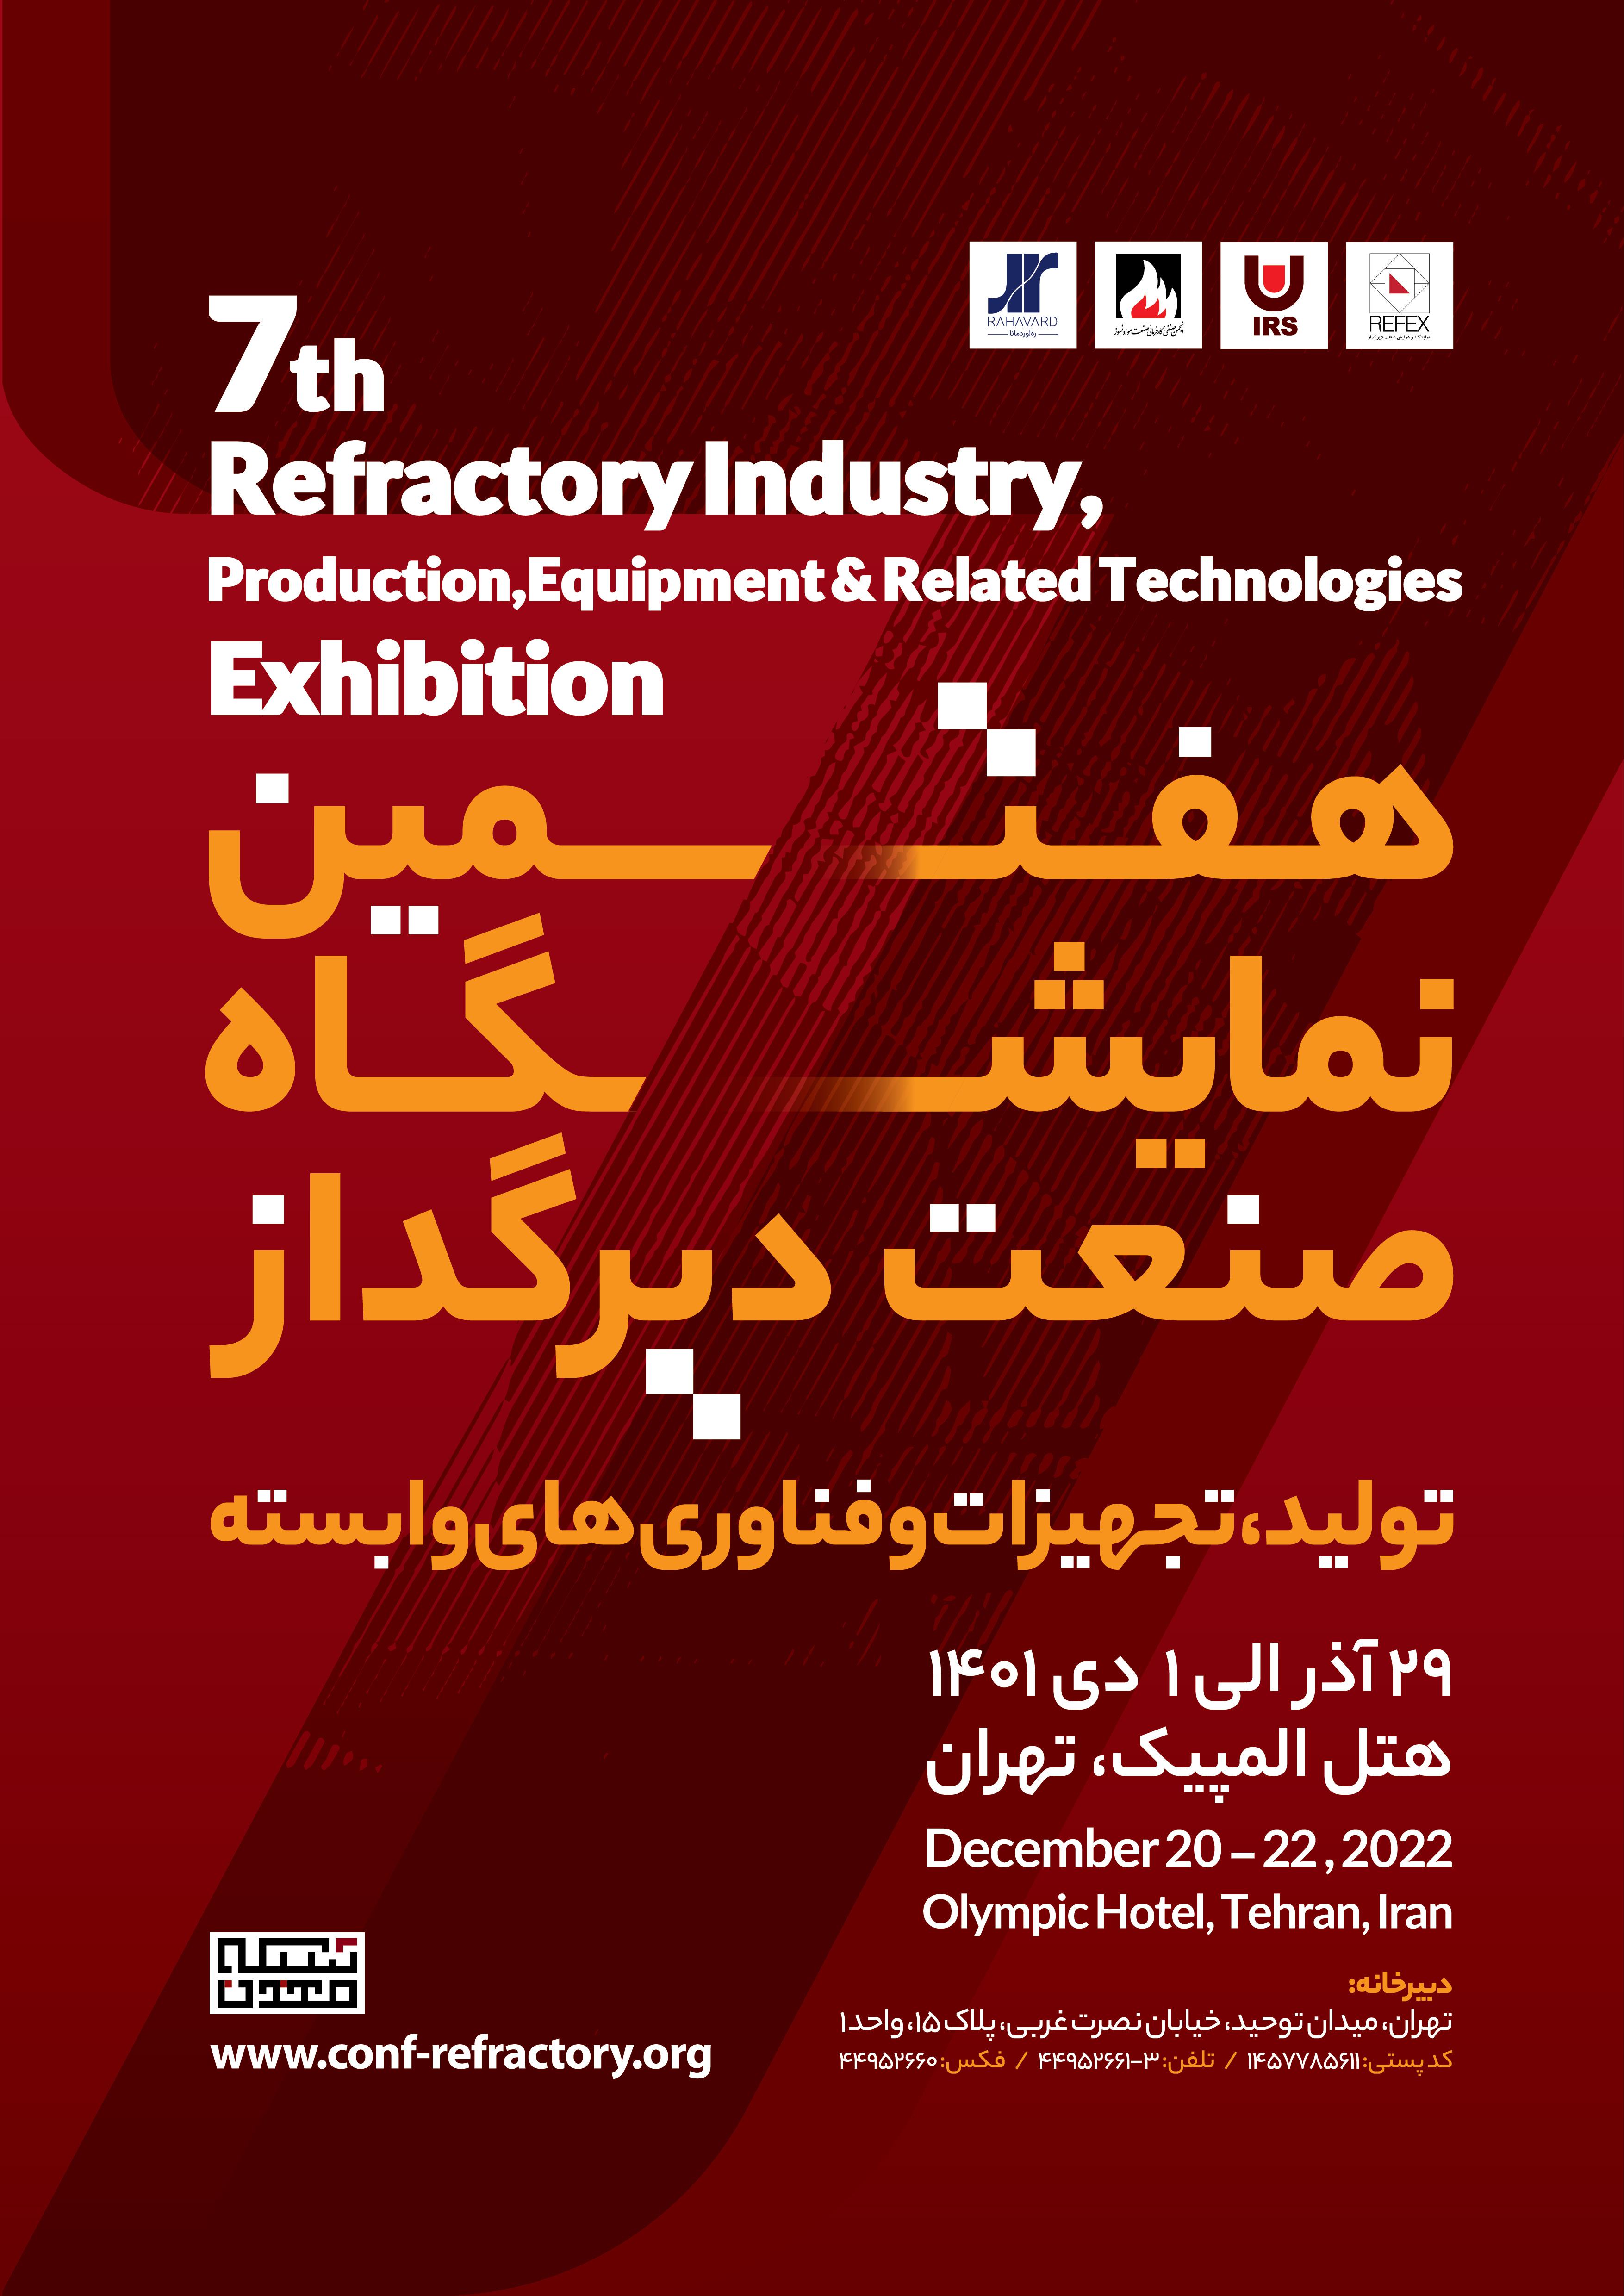 هفتمین نمایشگاه صنعت دیرگداز، تولید، تجهیزات و فناوری های وابسته